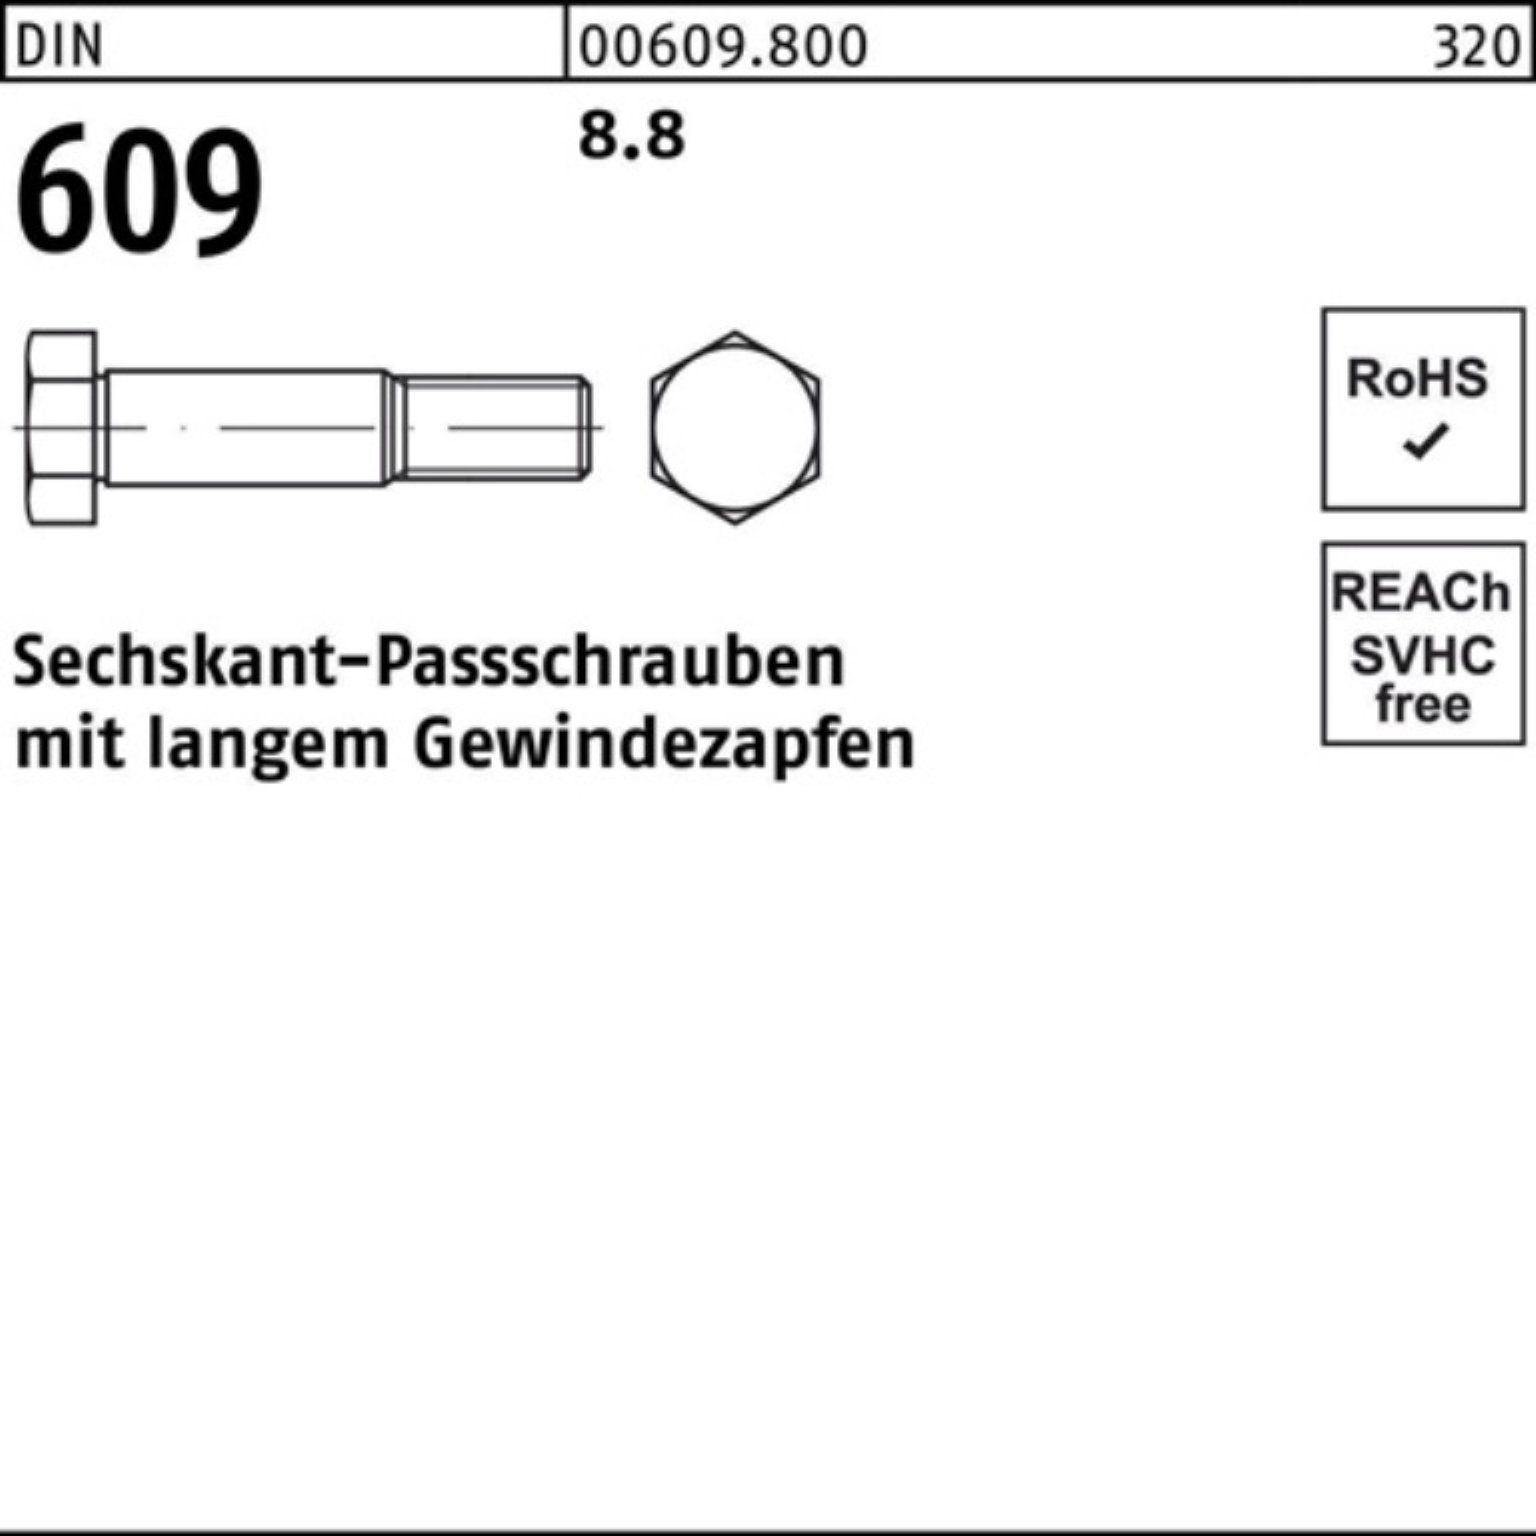 609 Schraube DIN Reyher Sechskantpassschraube M10x Pack Gewindezapfen 80 langem 100er